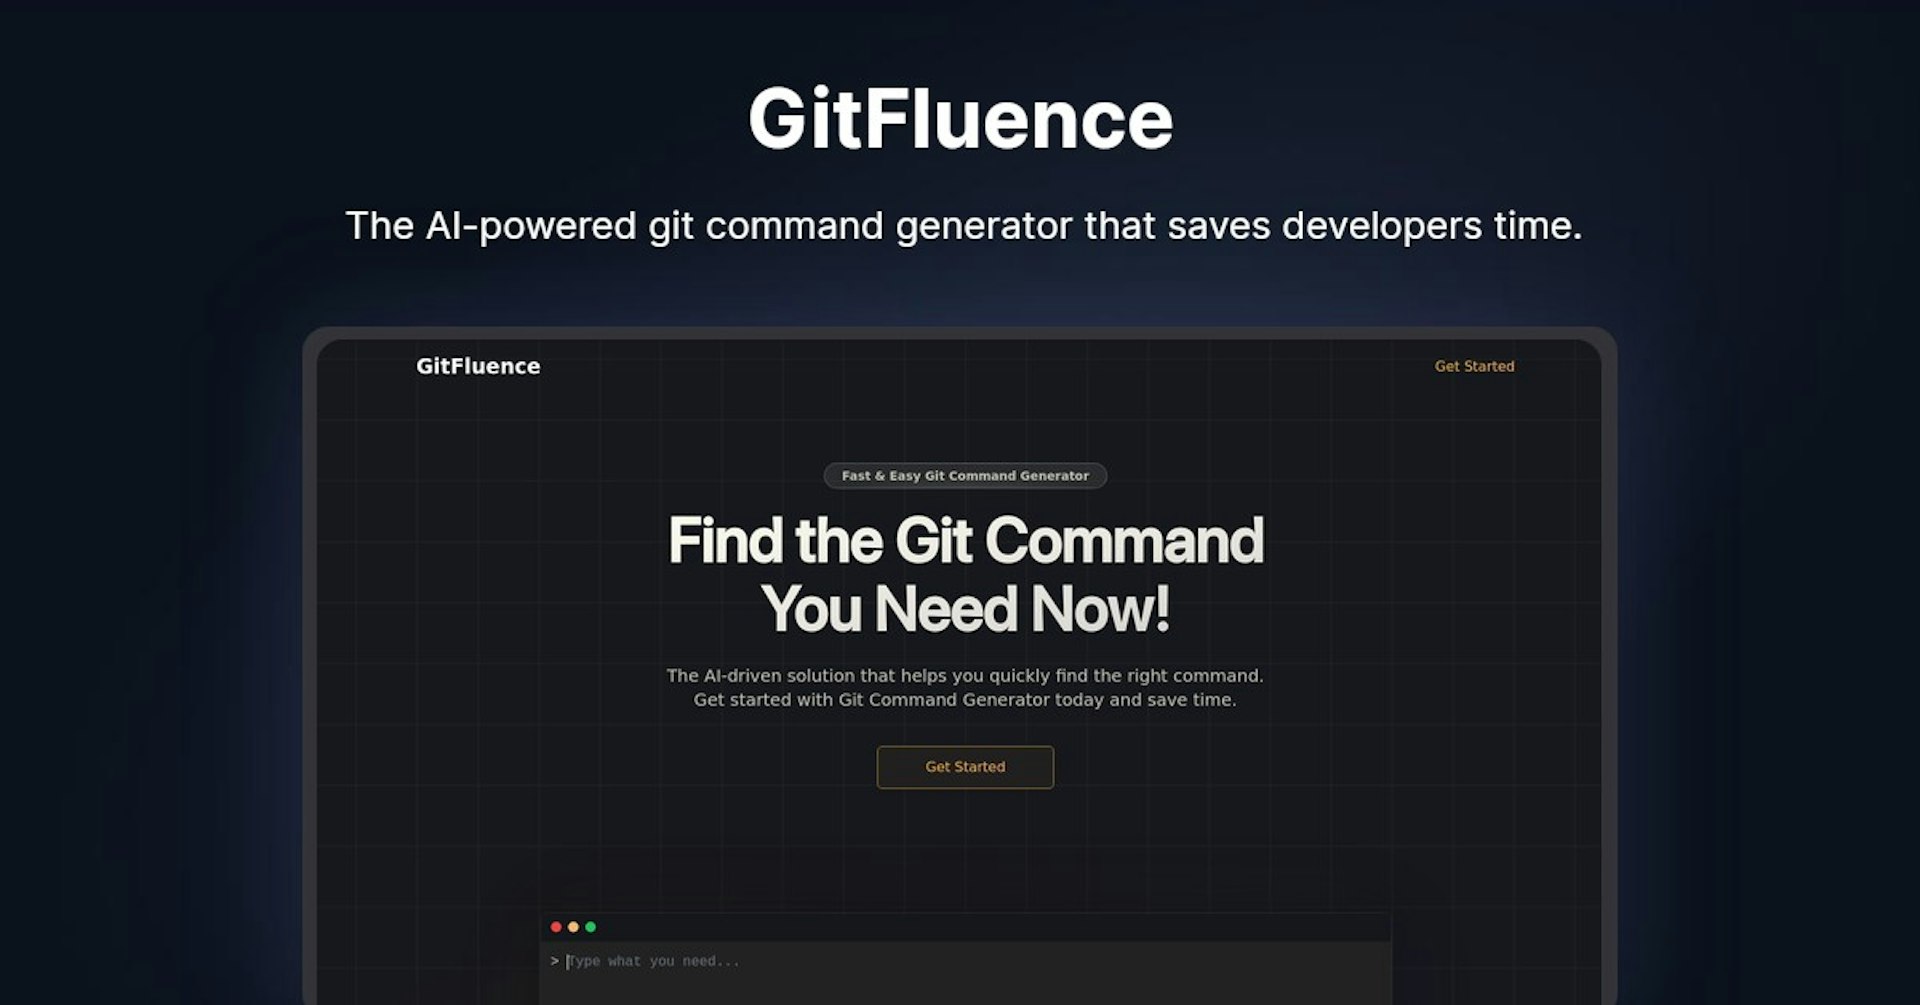 GitFluence